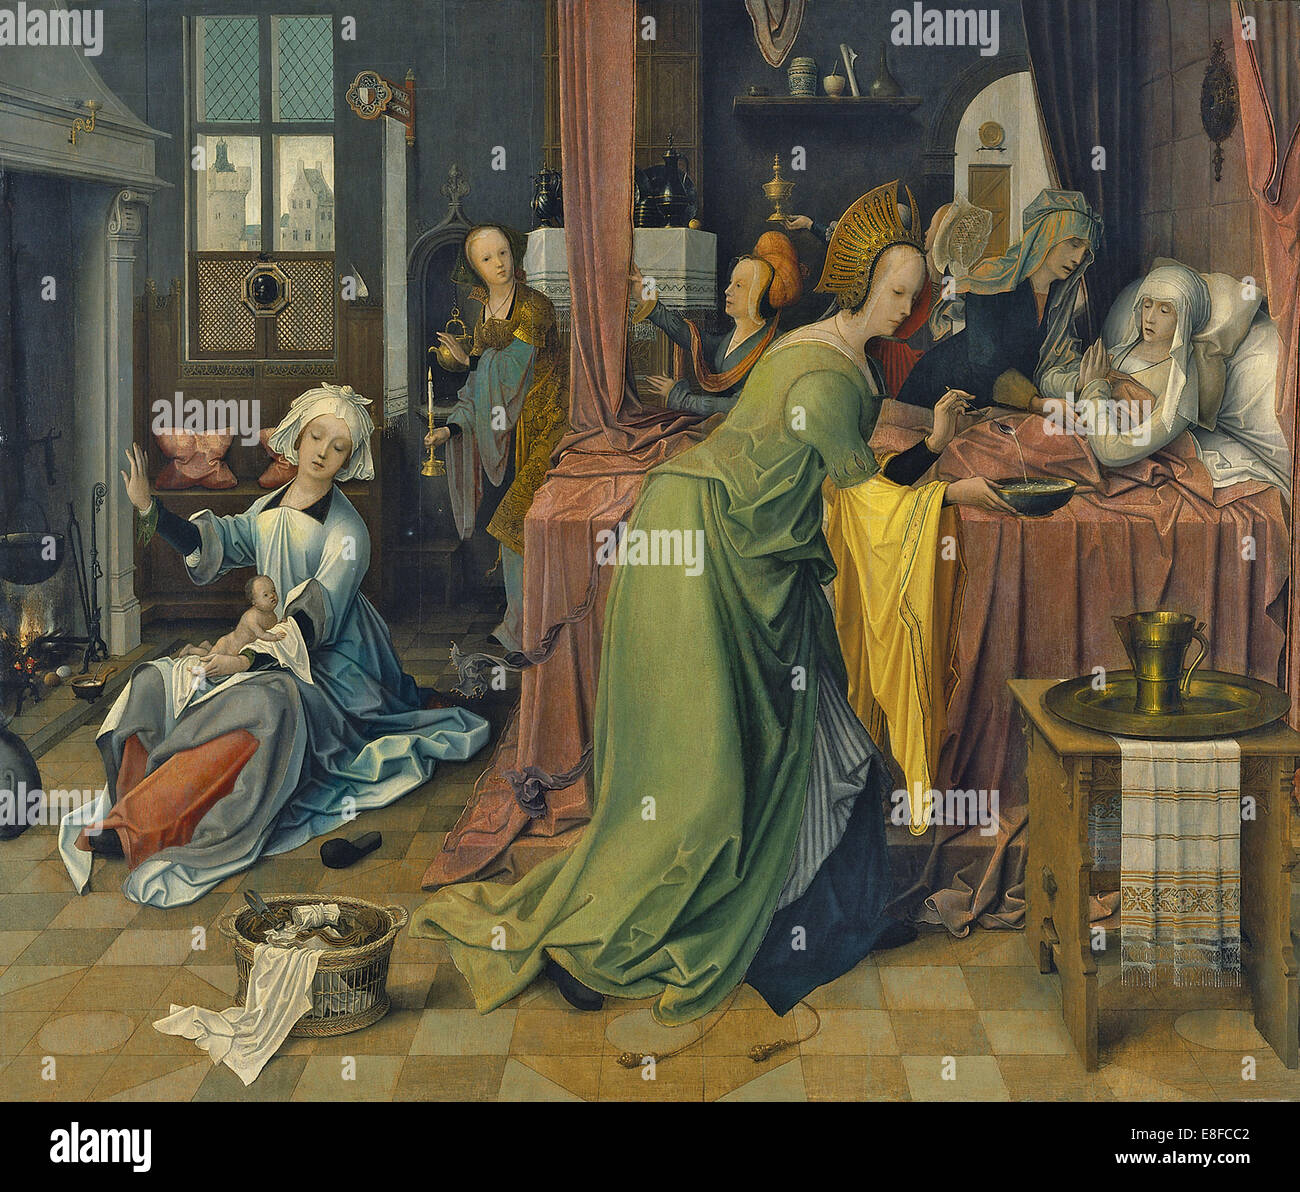 The Birth of the Virgin. Artist: De Beer, Jan (ca 1475-1528) Stock Photo